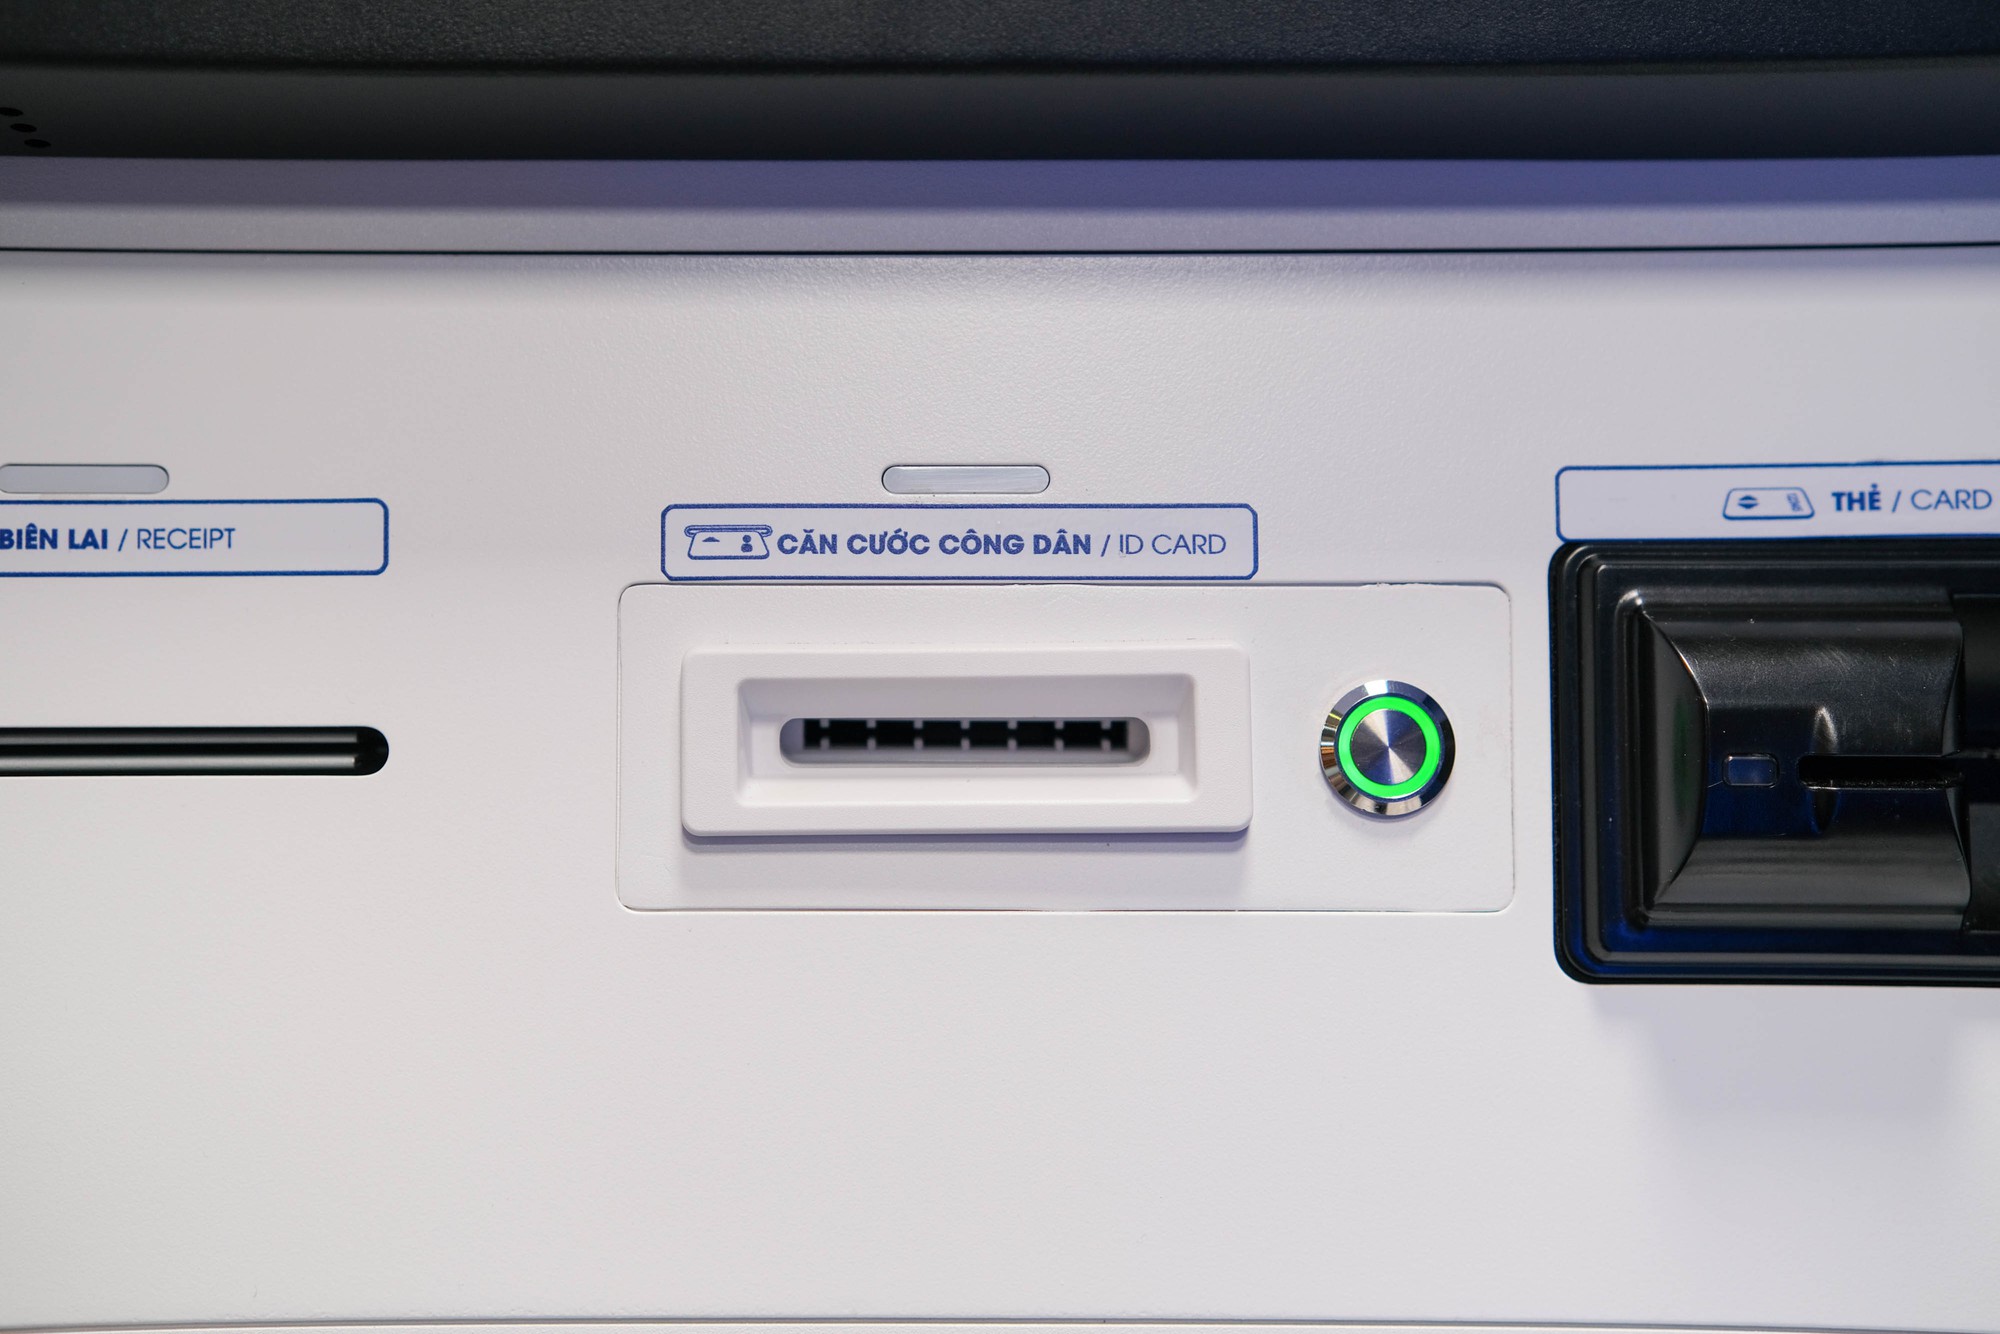 Trải nghiệm rút tiền tại ATM bằng CCCD gắn chip: Quy trình nhanh – gọn – lẹ, đã đến lúc tạm biệt thẻ ATM? - Ảnh 3.